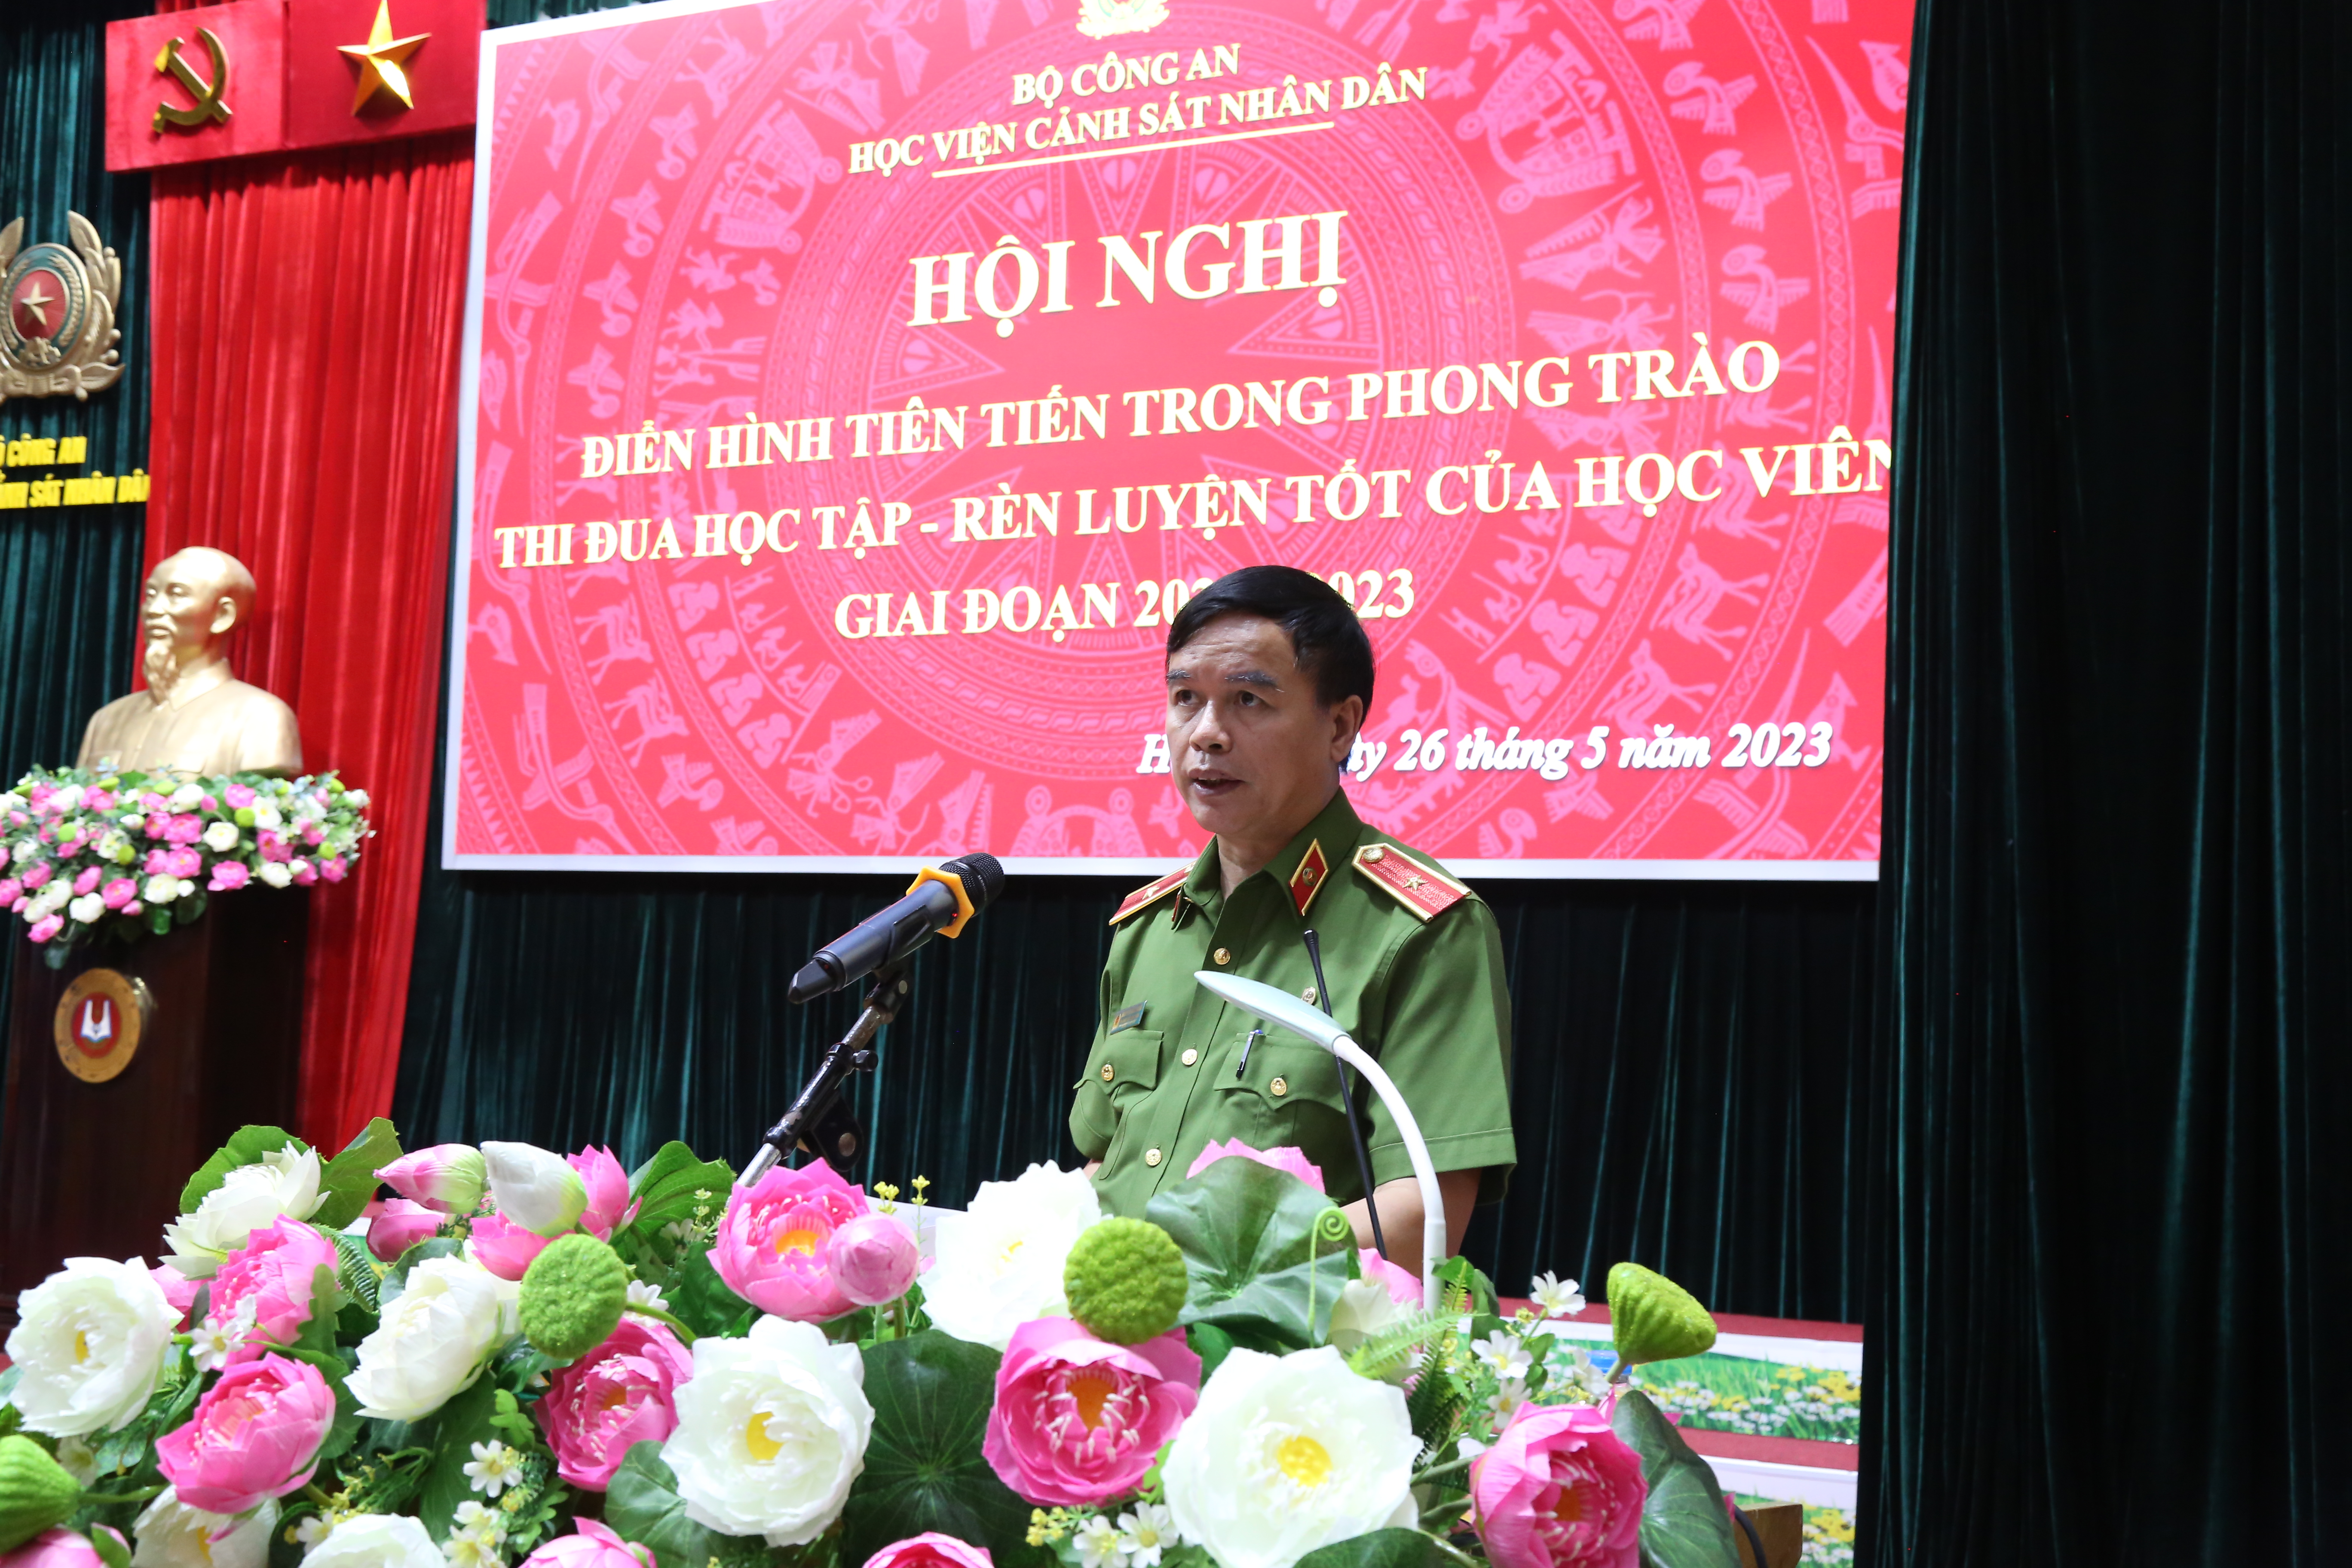 Thiếu tướng, GS. TS Nguyễn Đắc Hoan, Phó Giám đốc Học viện phát biểu kết luận tại Hội nghị